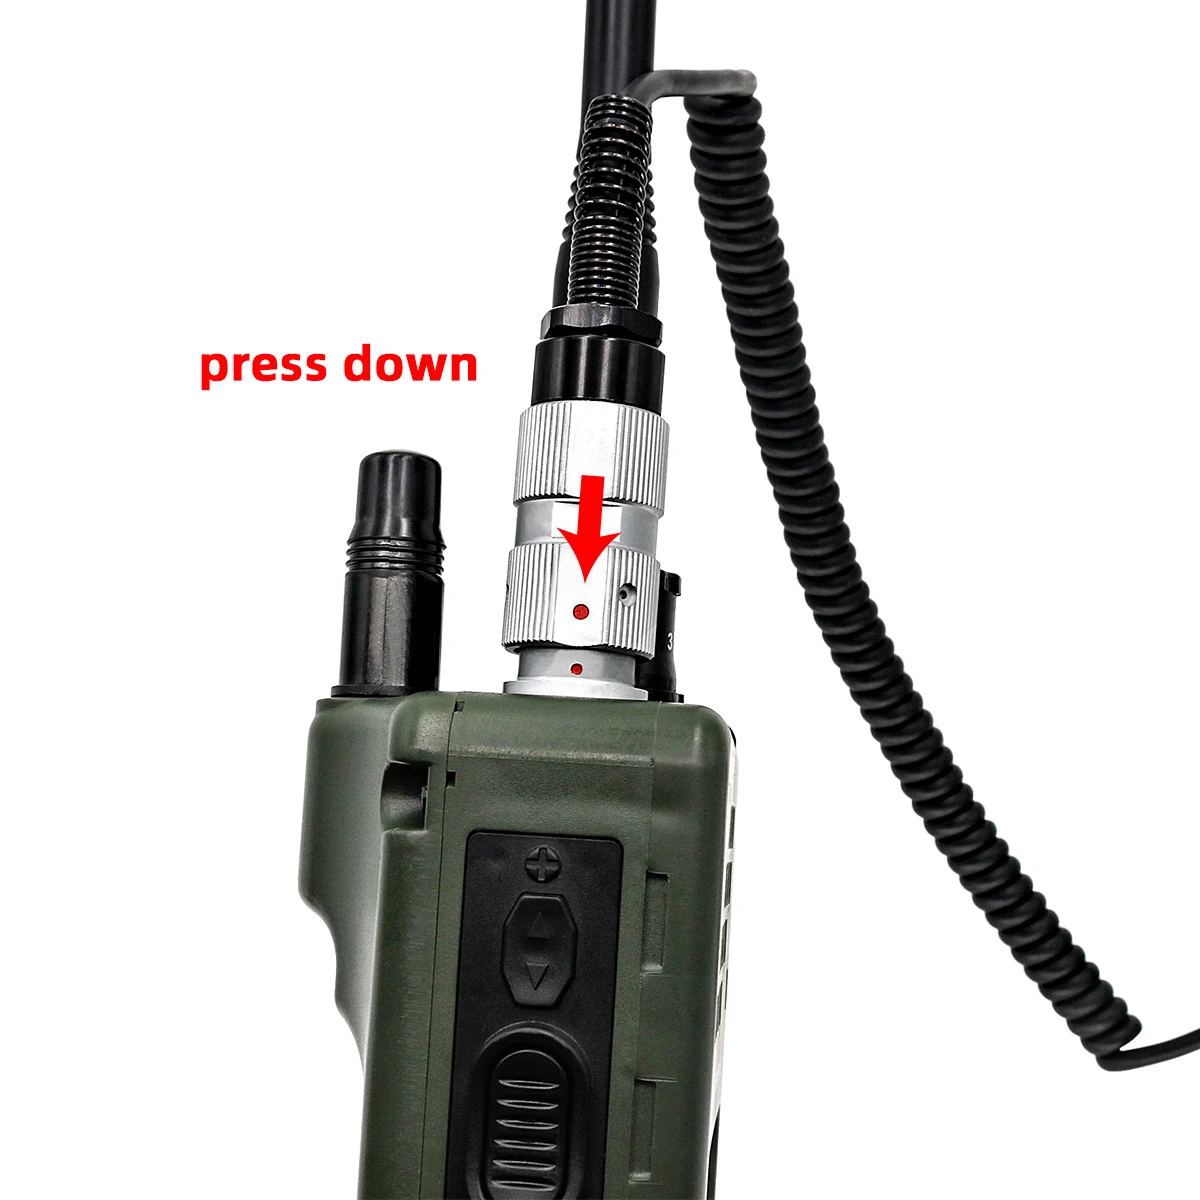 PRC-152 Харрис макет радиоприемника чехол, военная рация-Walkie модель для Baofeng Радио+ H250 ручной динамик микрофон 6 pin ptt